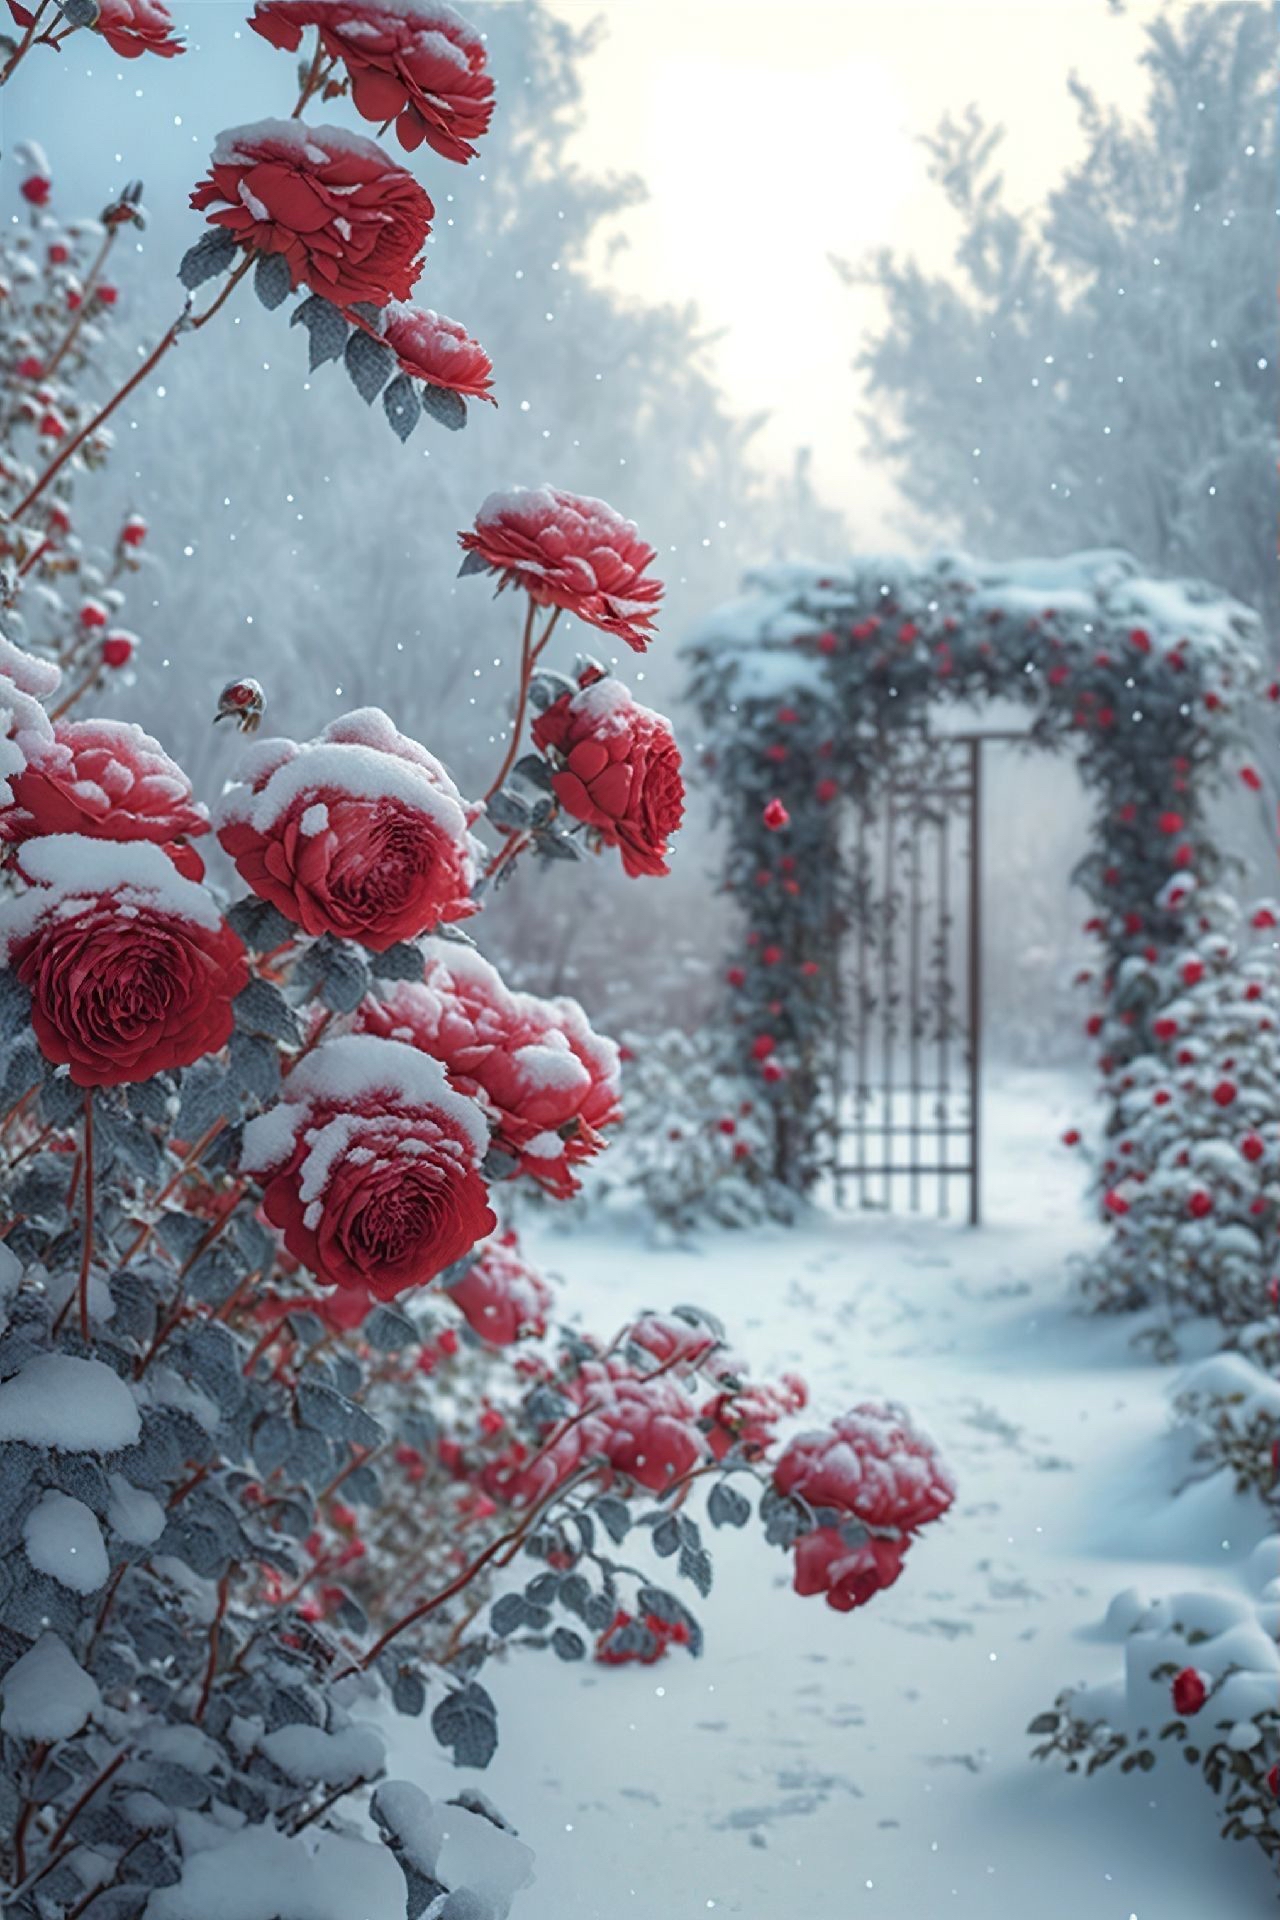 雪中玫瑰图片大全唯美图片